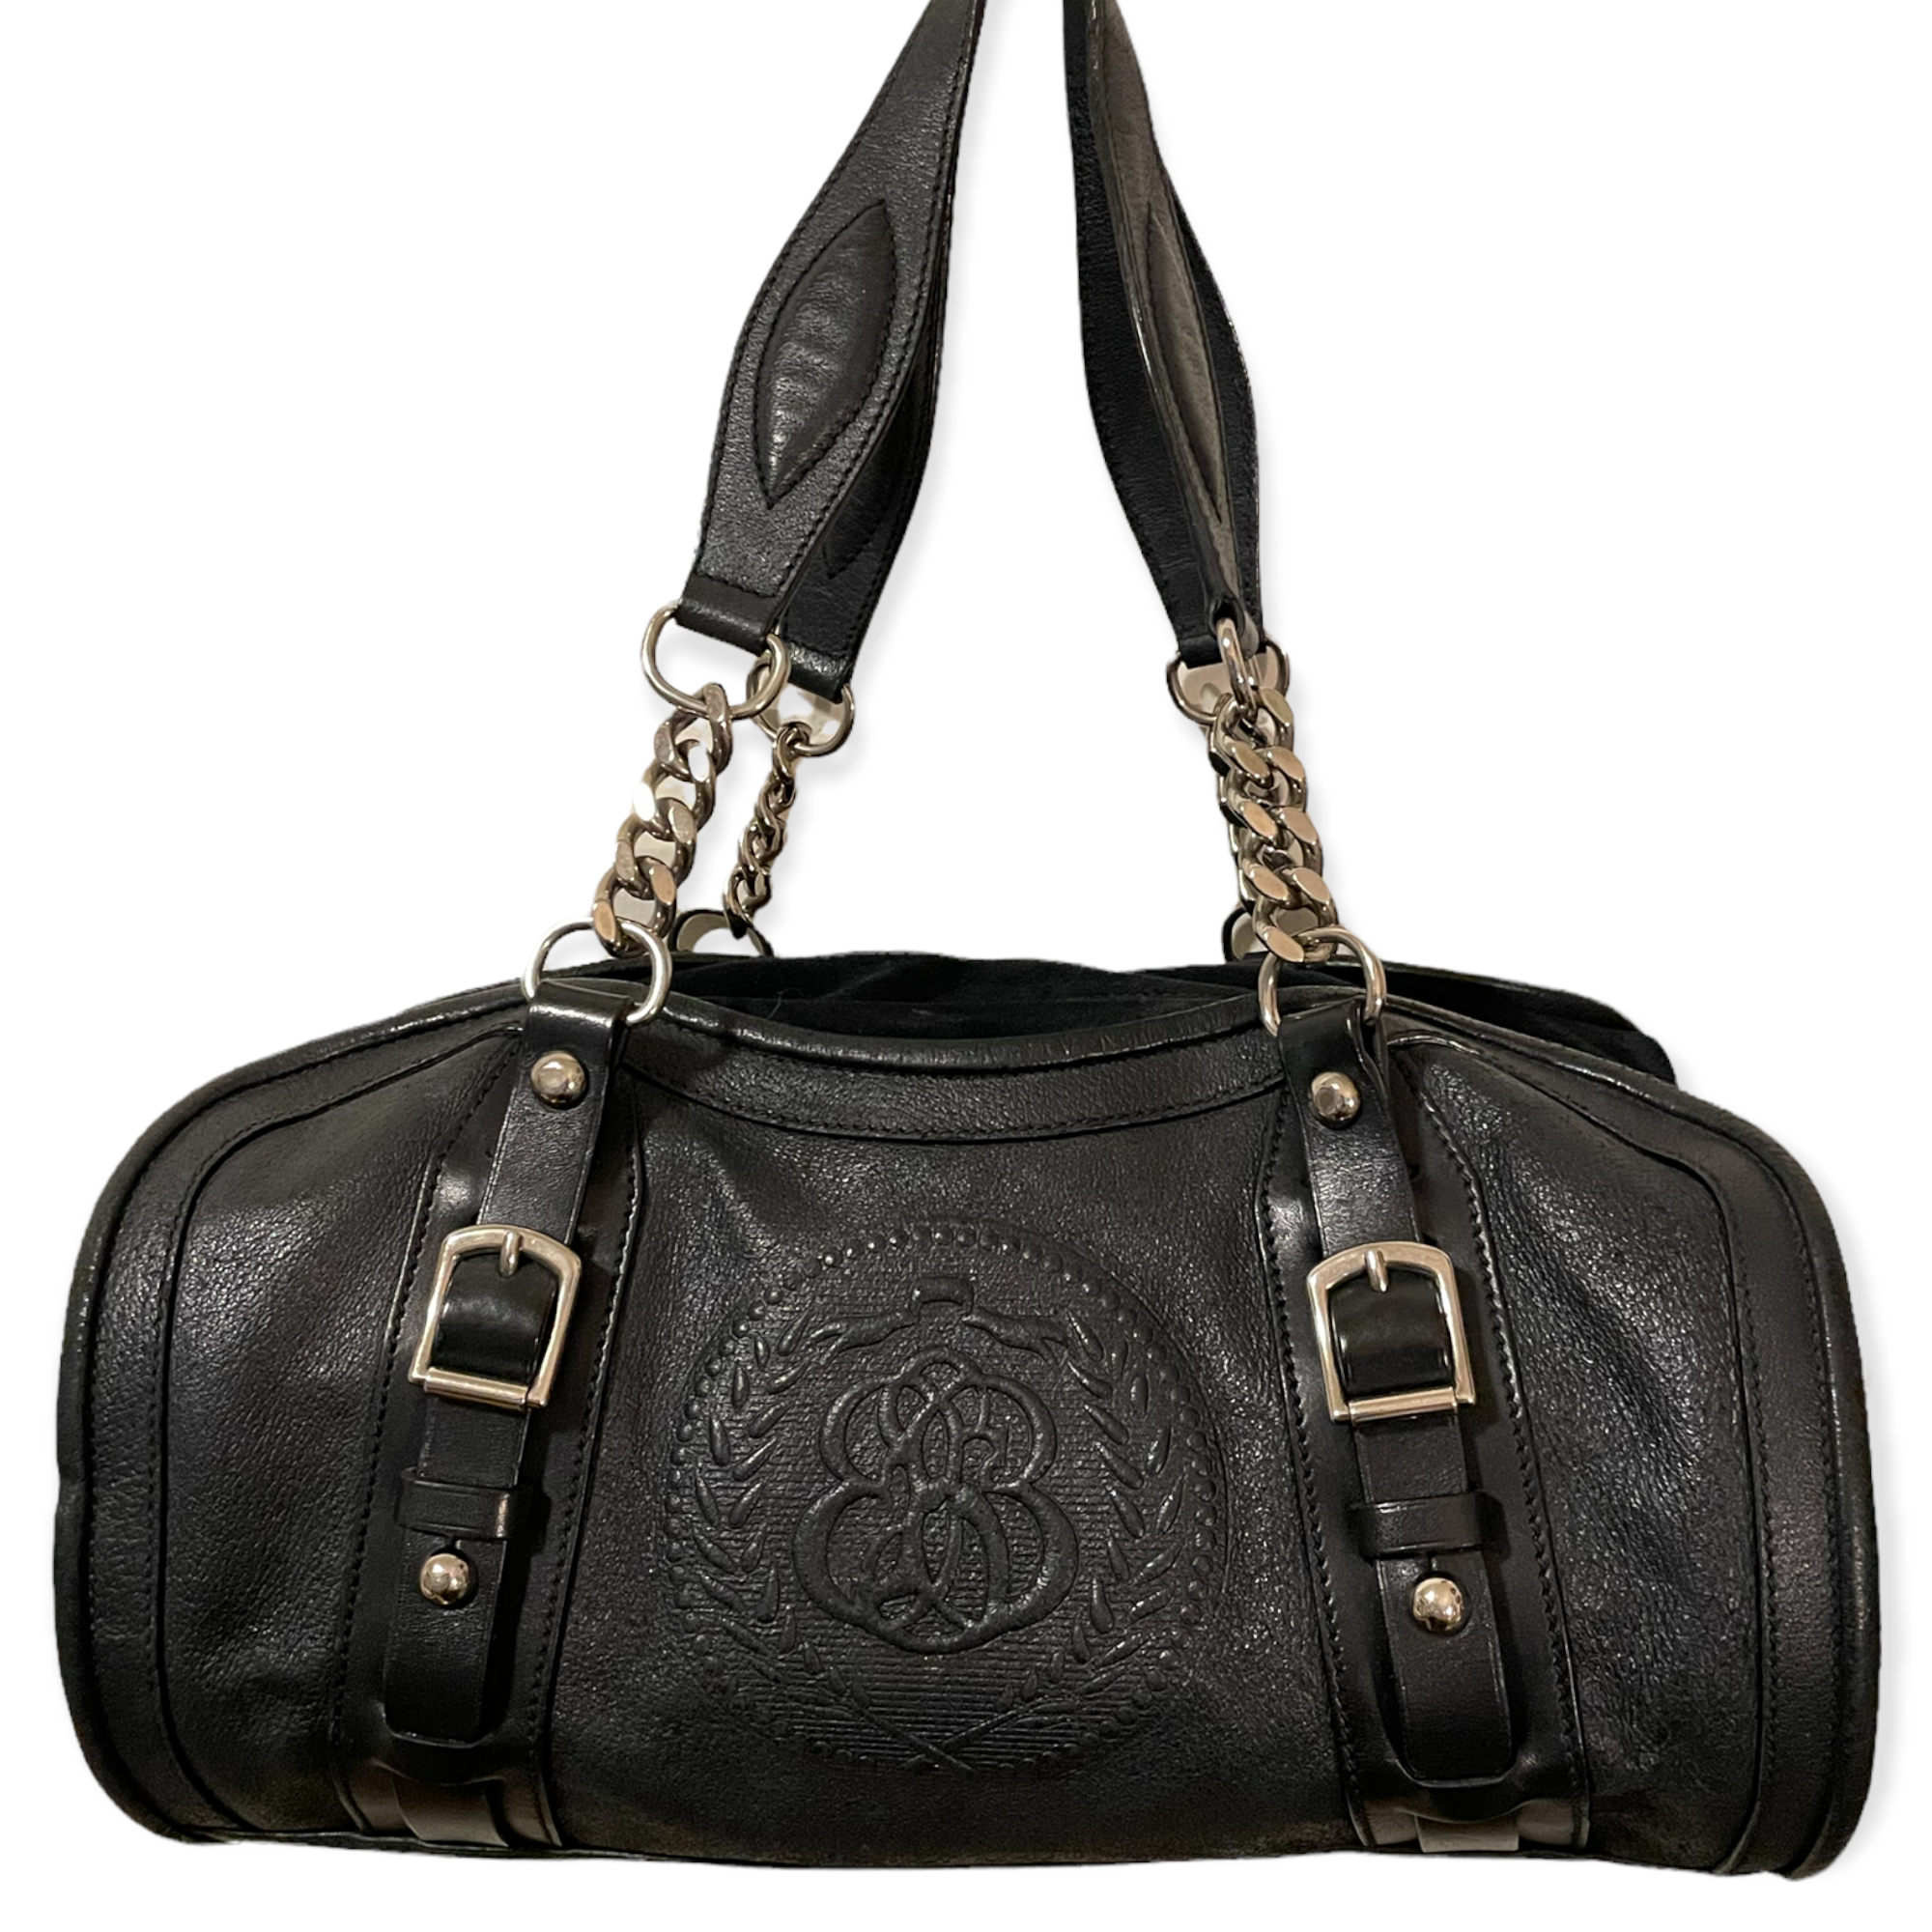 Balenciaga Black Leather & Suede Handbag